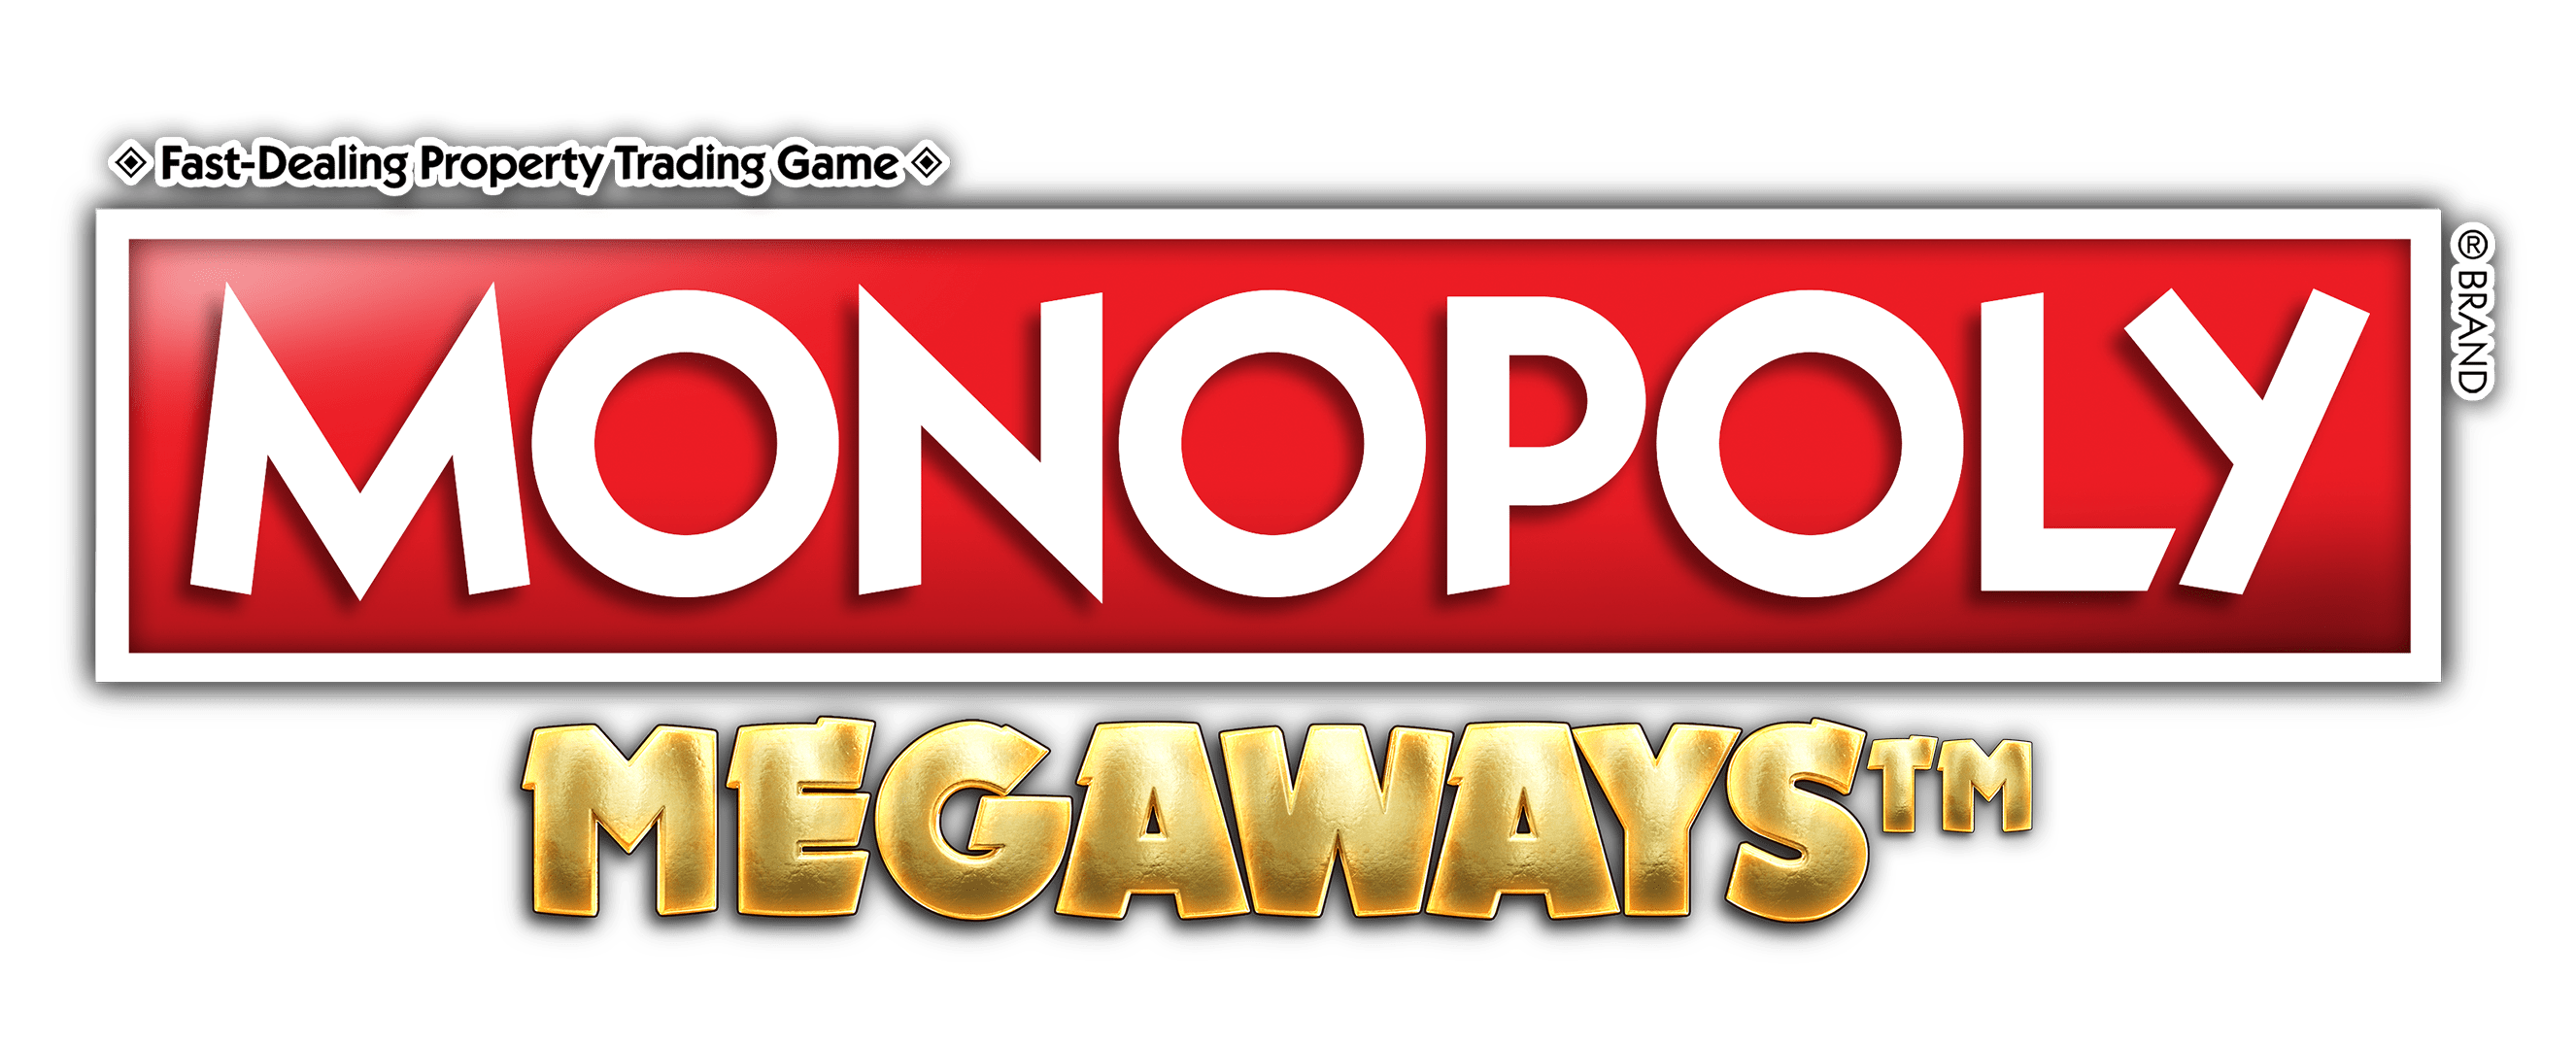 Monopoly Megaways (Bit Time gaming) Slot Logo